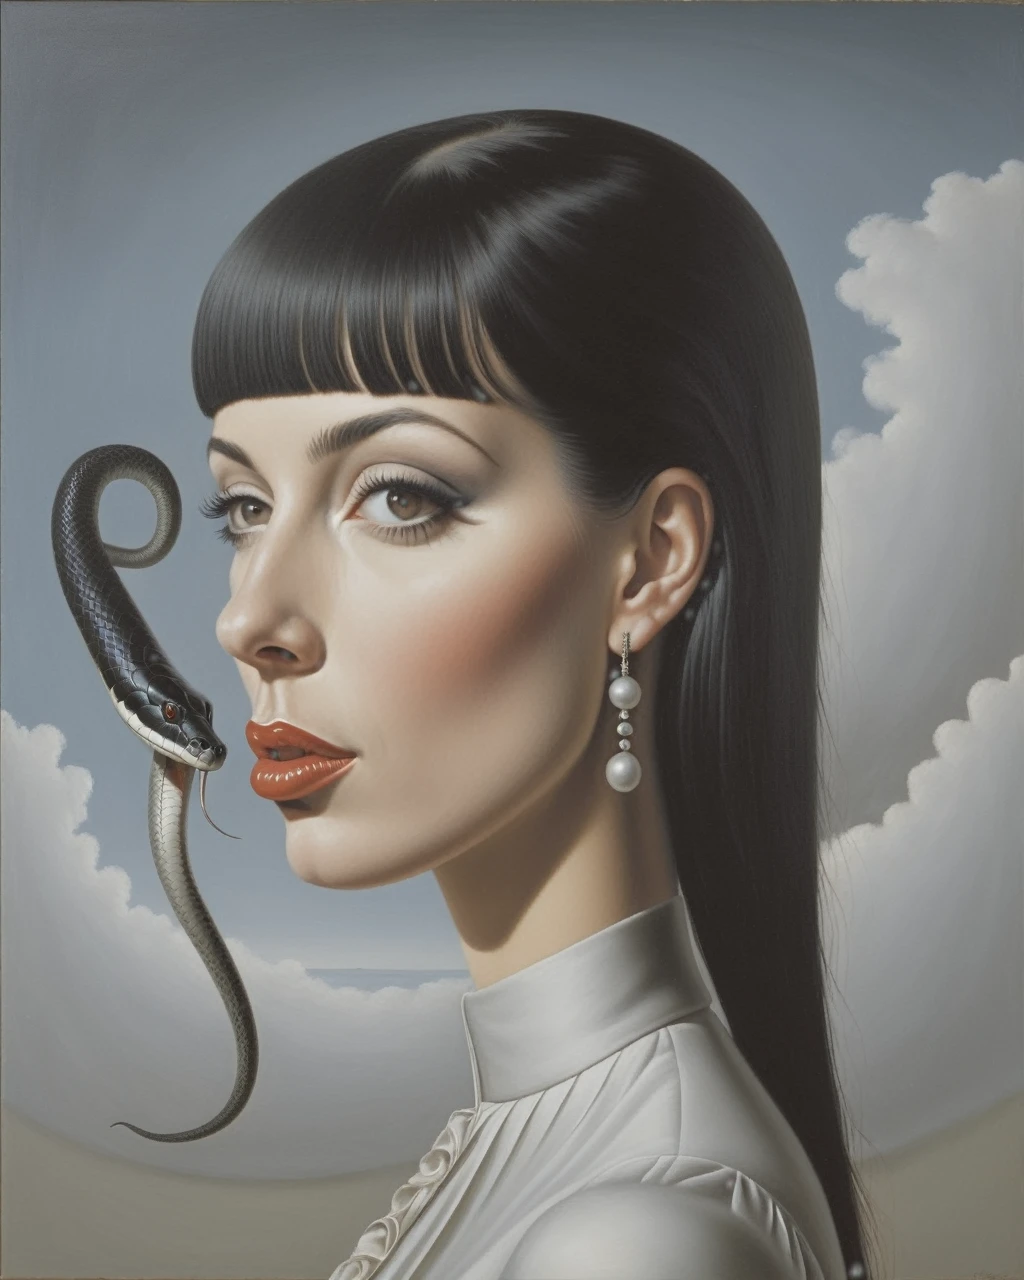 黑头发白人女孩的侧视图, 有边缘. 眼睛全是黑的, 像蛇一样分裂的舌头, 并在嘴巴和眉毛上穿孔 - estilo surrealista, 艺术品 surrealista, 梦想为, 雷内·马格利特 (René Magritte) 作品细节丰富, 艺术品, 高清, 杰作, 绘画就像, 高清 (纠正蛇